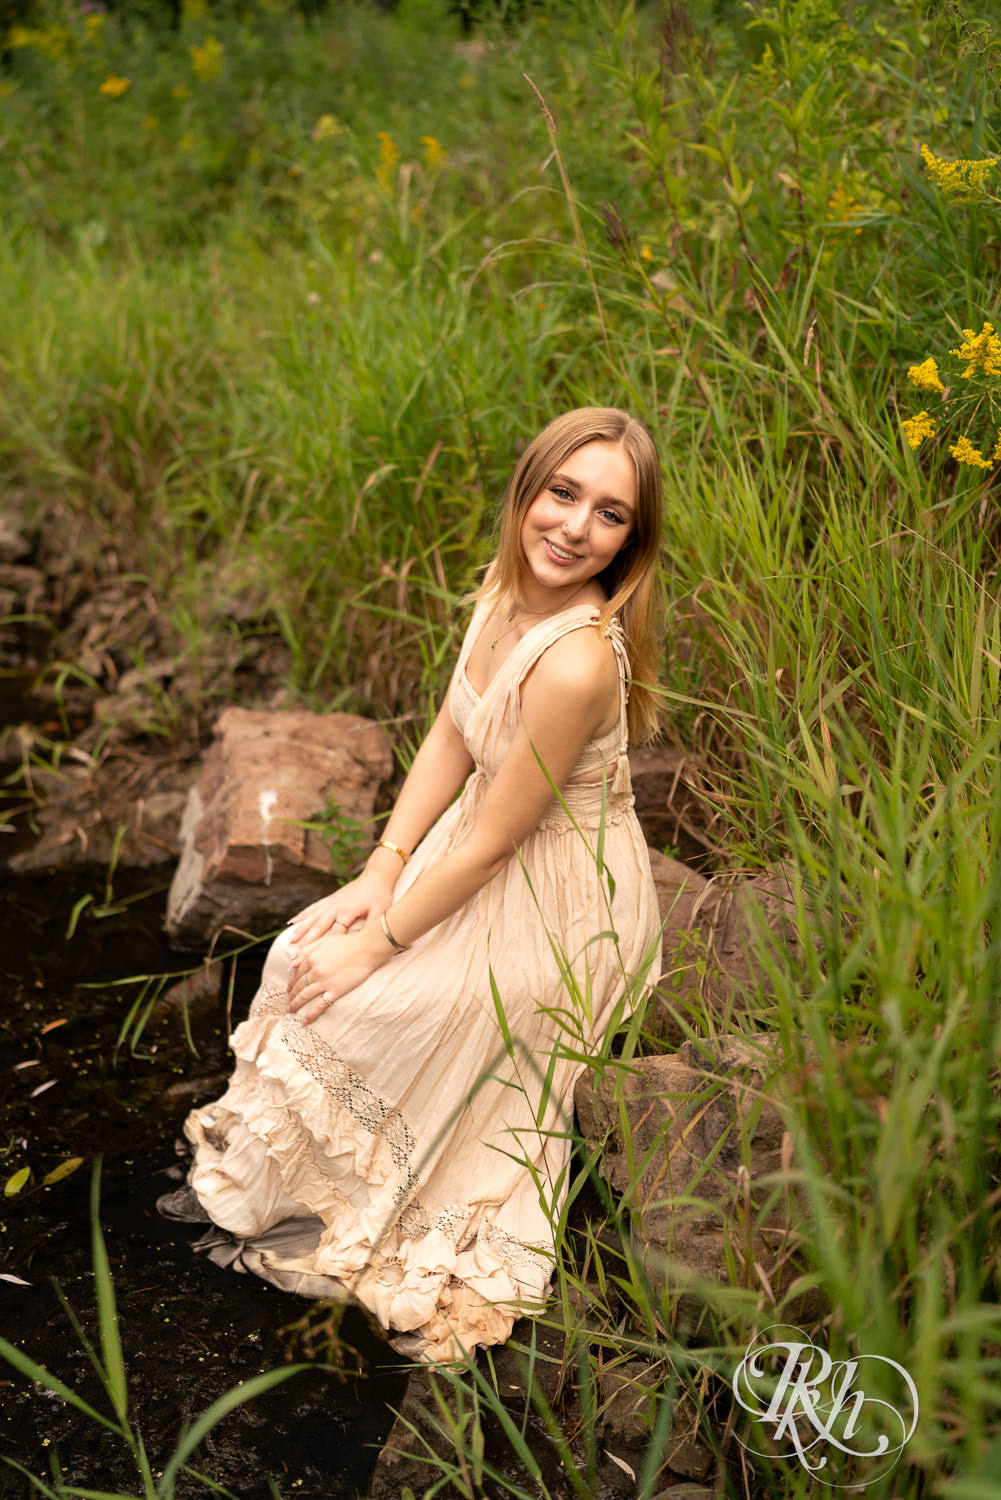 Blond girl in sundress smiles during senior photography in Minnetonka, Minnesota.